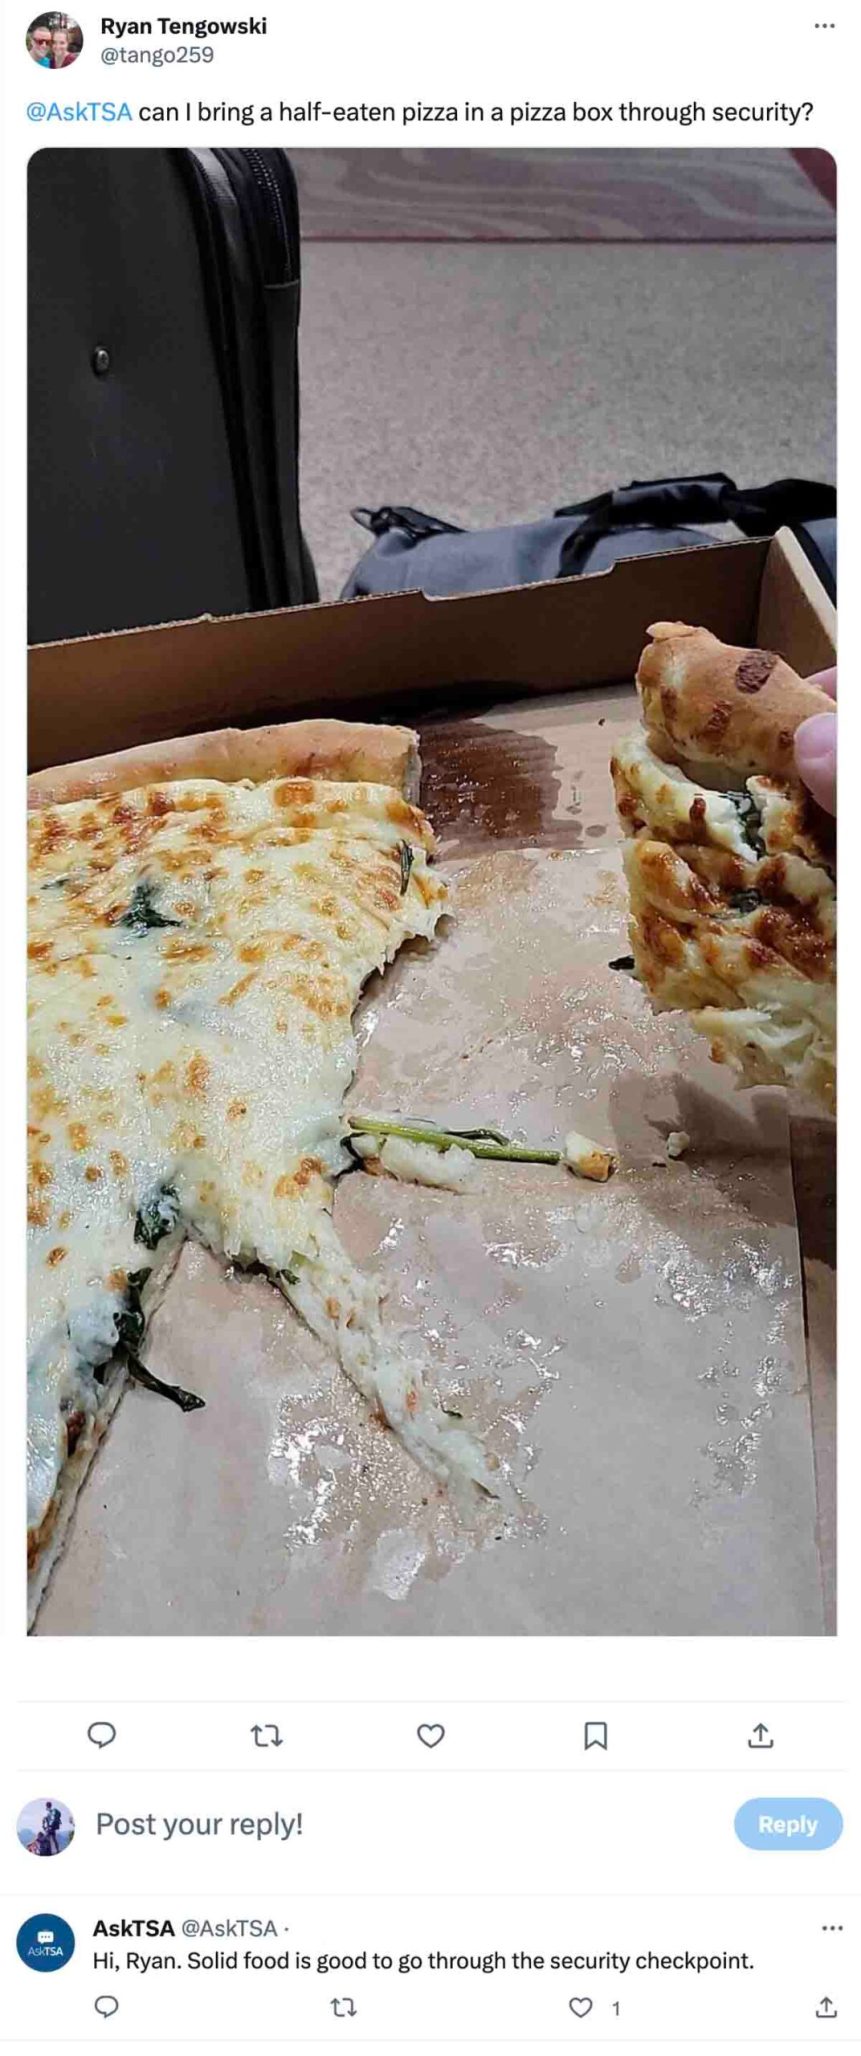 ¿Puedes traer pizza a través de la TSA? (Instrucciones detalladas)